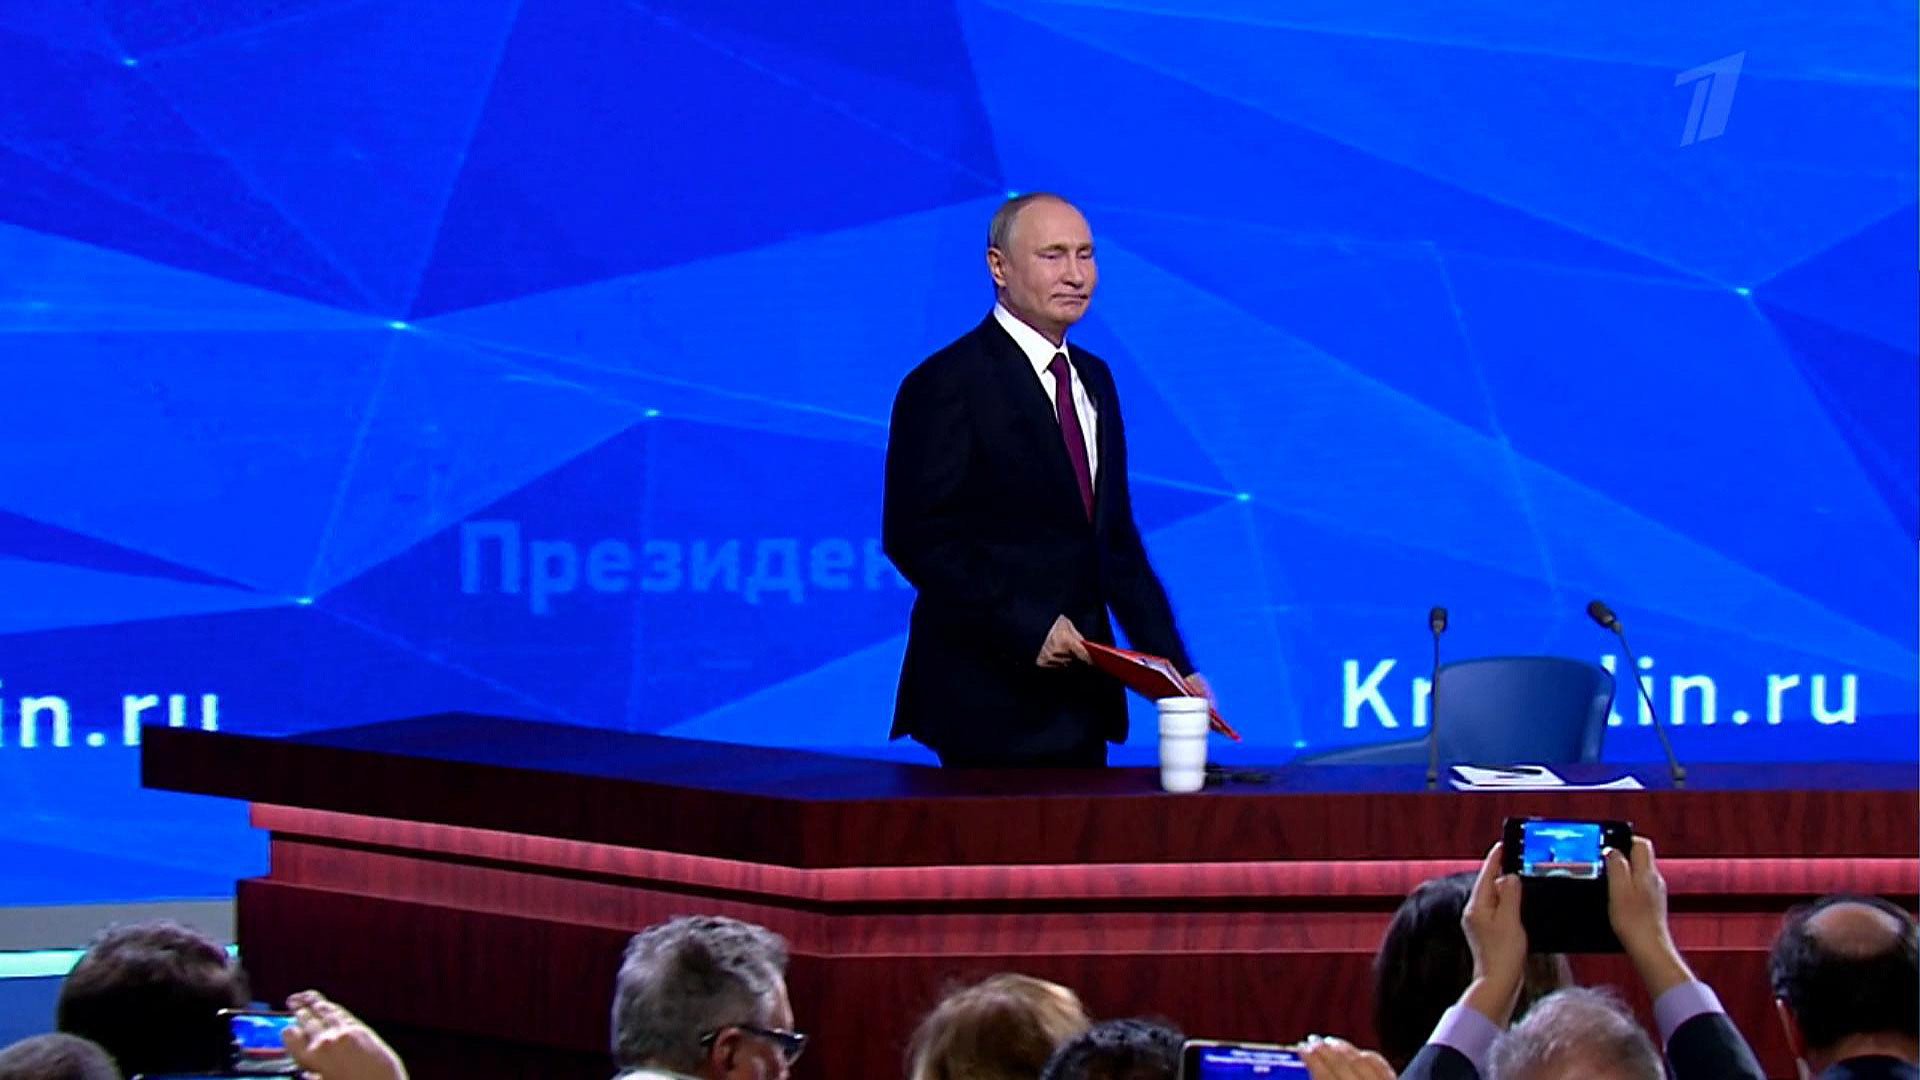 Большая пресс-конференция Президента Российской Федерации Владимира Путина. Прямая трансляция